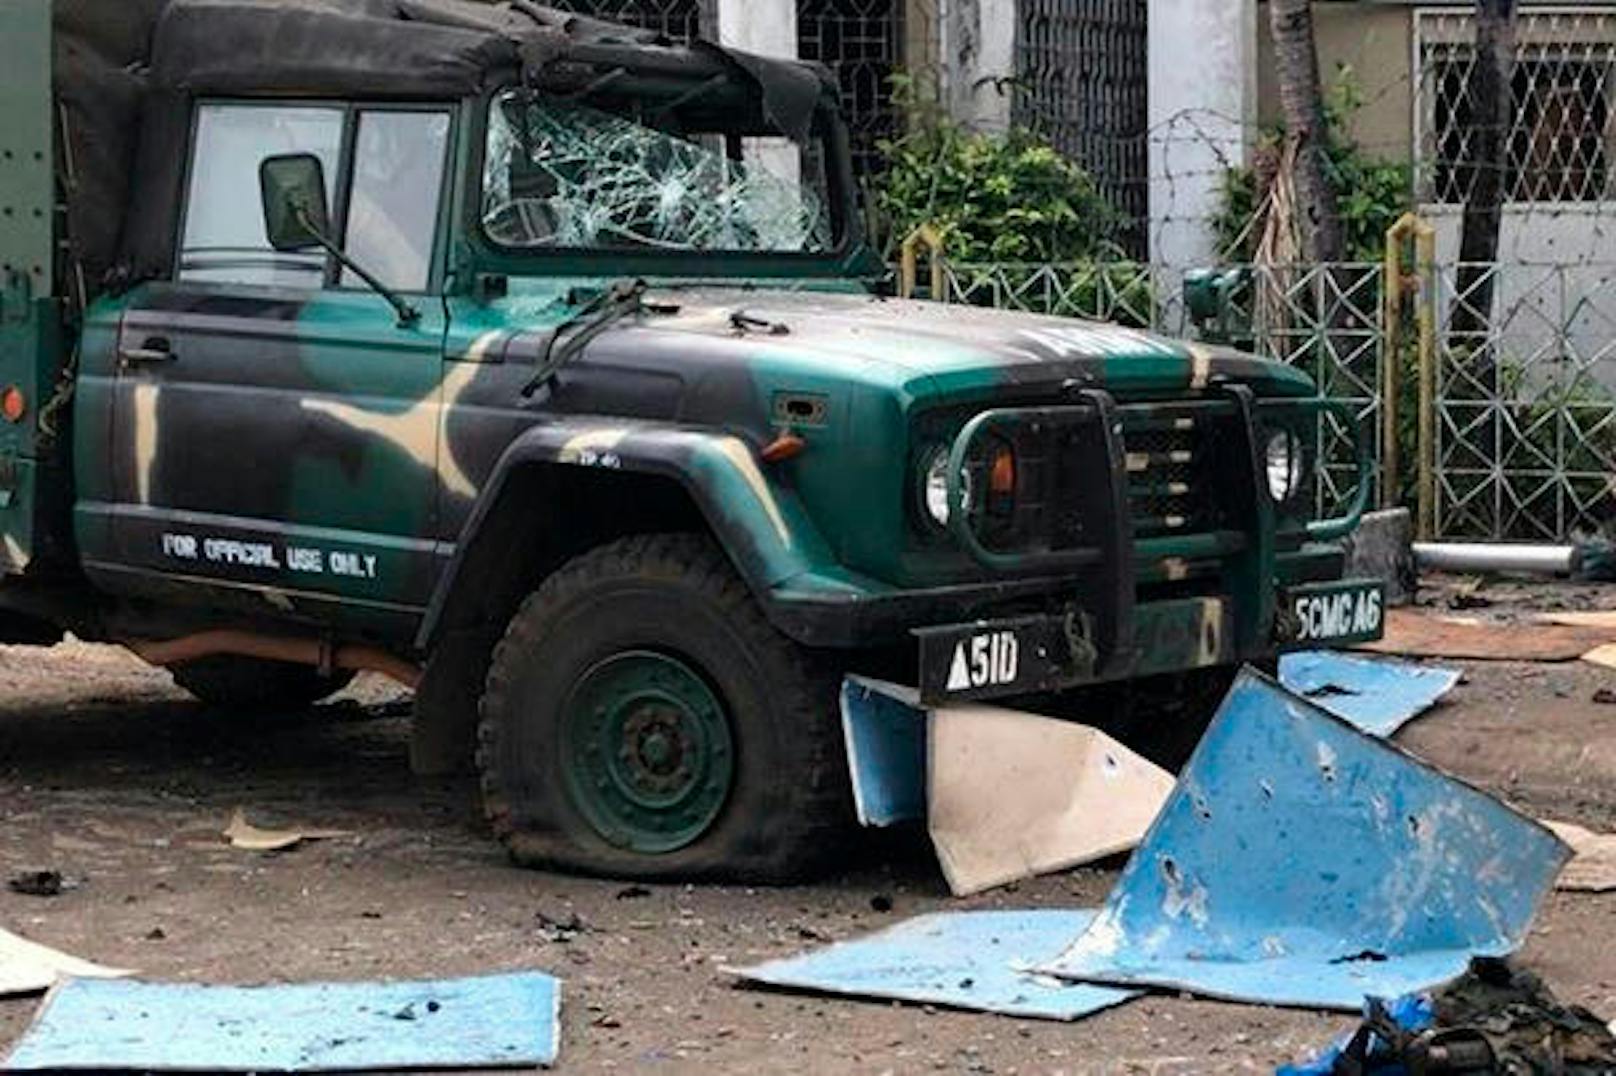 Bei einem Doppel-Anschlag auf eine katholische Kirche in der Stadt Jolo (Philippinen) sind am Sonntag, 27. Jänner 2019, während des Gottesdienstes mindestens 21 Menschen getötet worden. Weitere 71 Opfer wurden nach Angaben der Polizei verletzt.